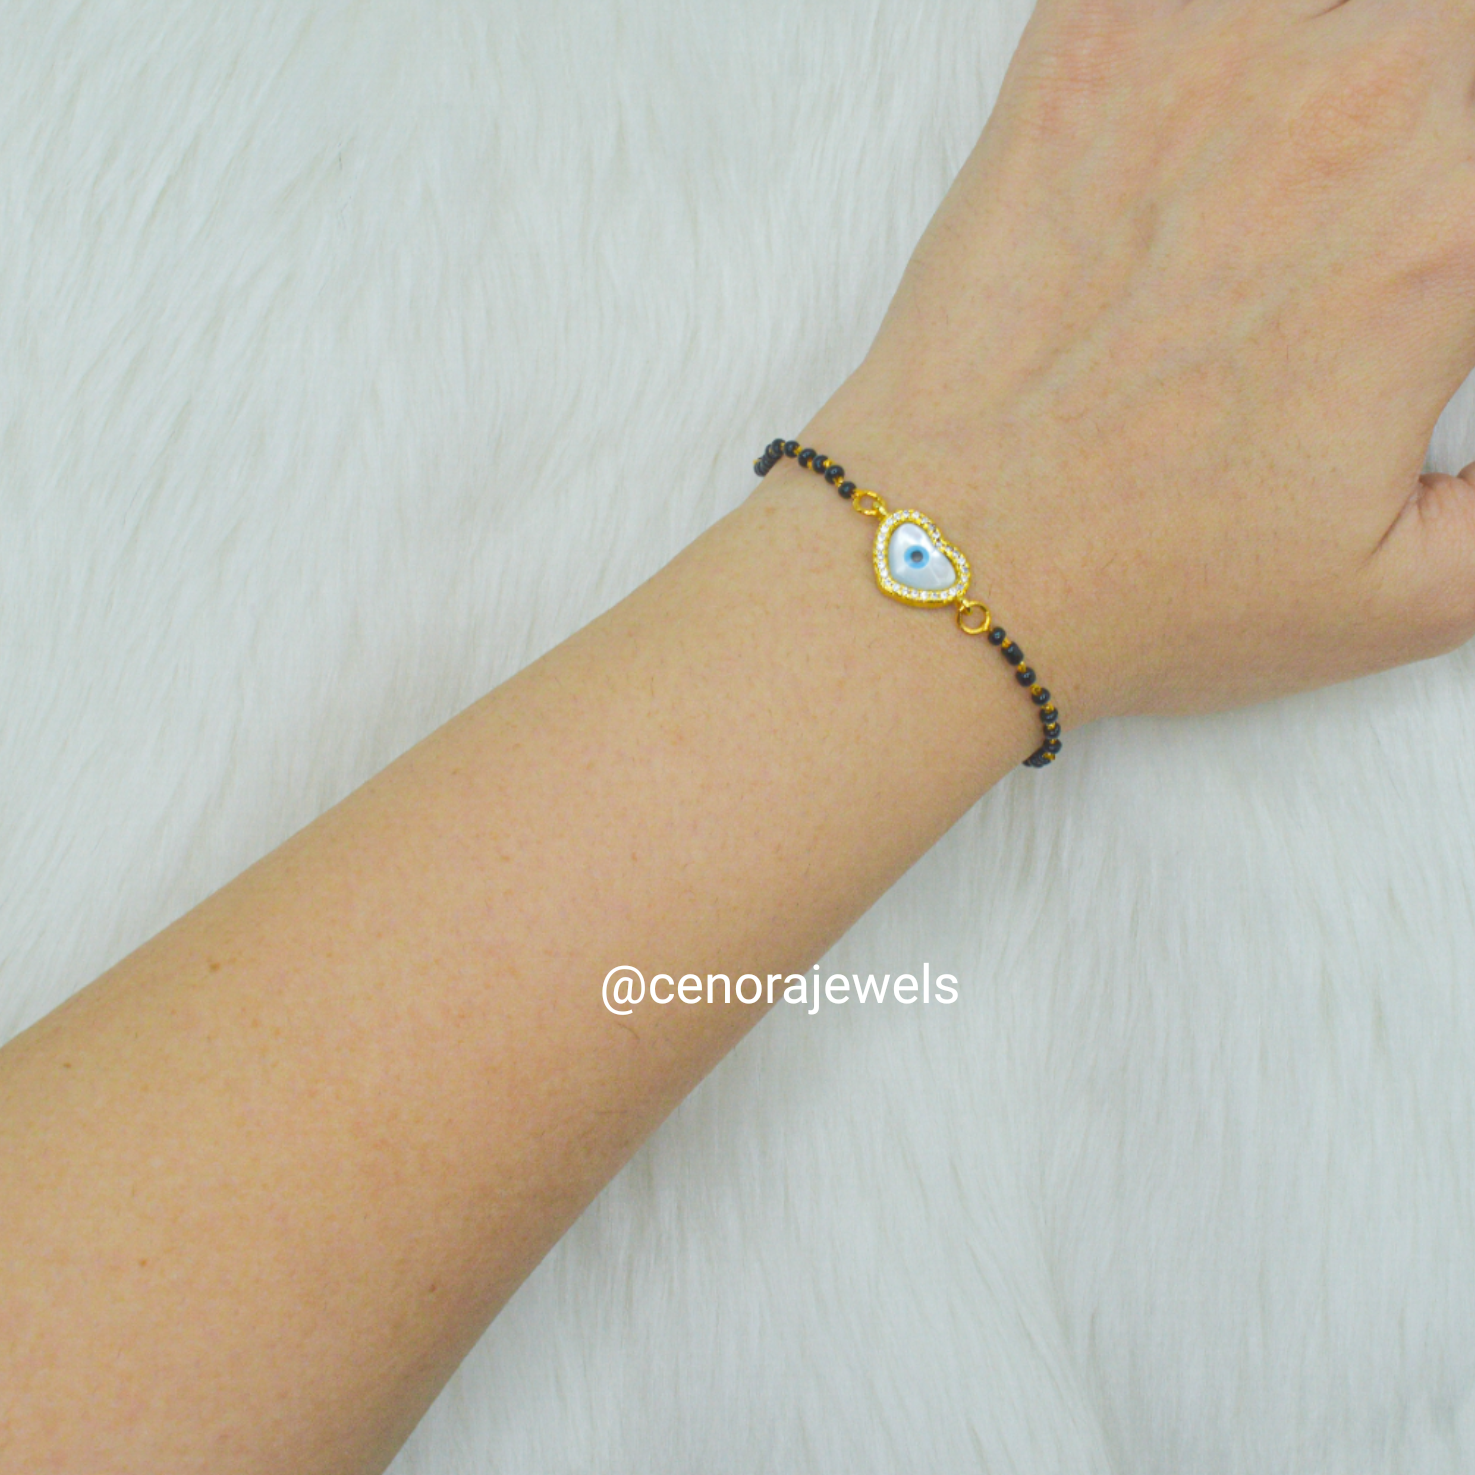 Designer hand mangalsutra bracelet for women